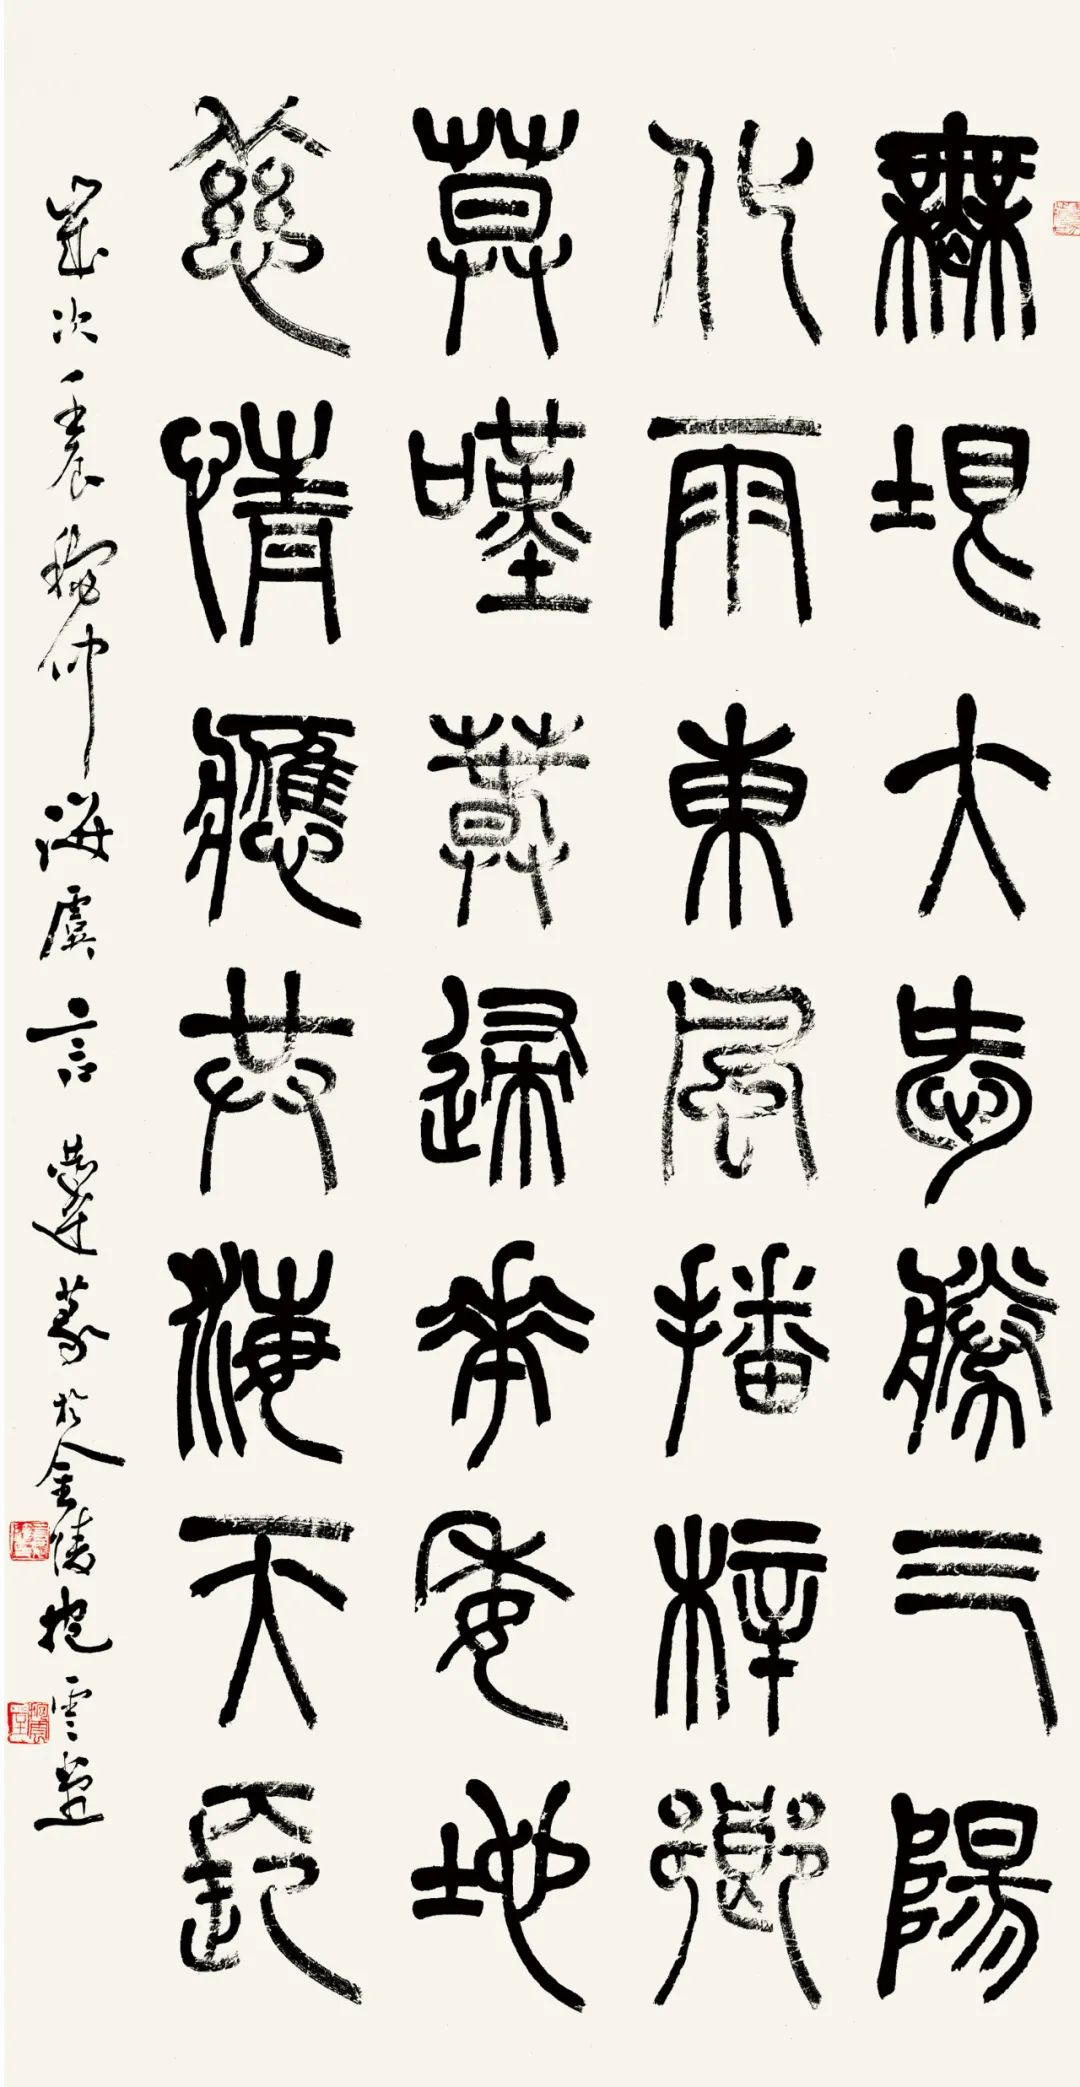 言恭达书法的当代价值和意义——兼论中国书法创新的独特性